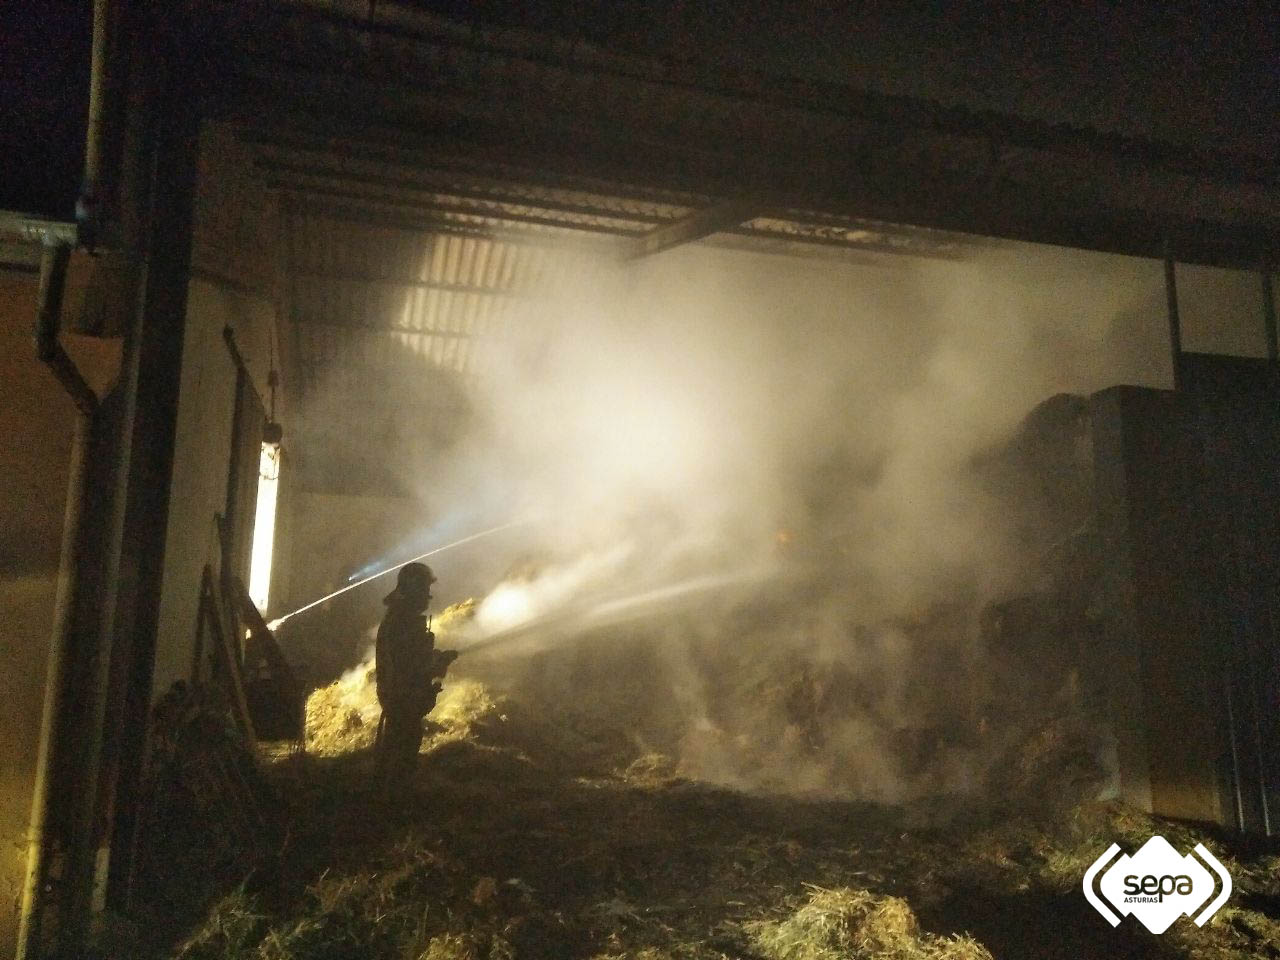 Extinguido un incendio declarado en una nave agrícola que almacenaba gran cantidad de hierba seca en La Follaca 1